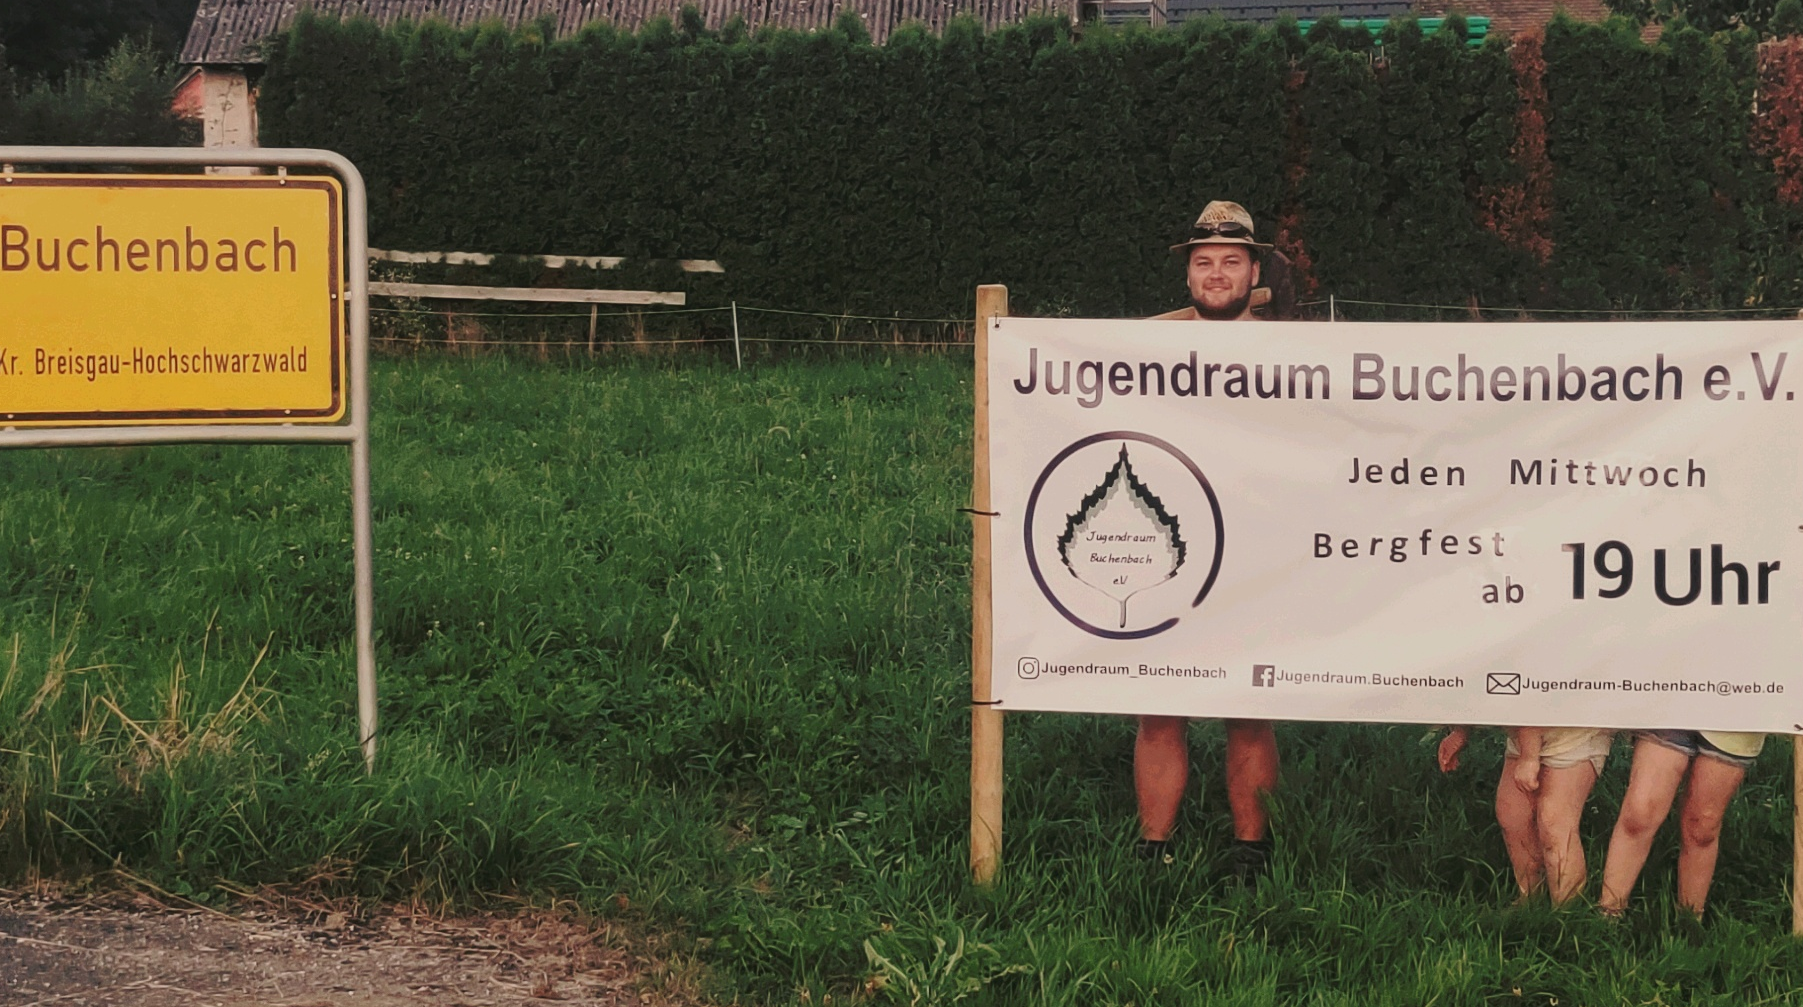 Bergfest-Banner des Jugendraum Buchenbach e.V. am Ortsschild